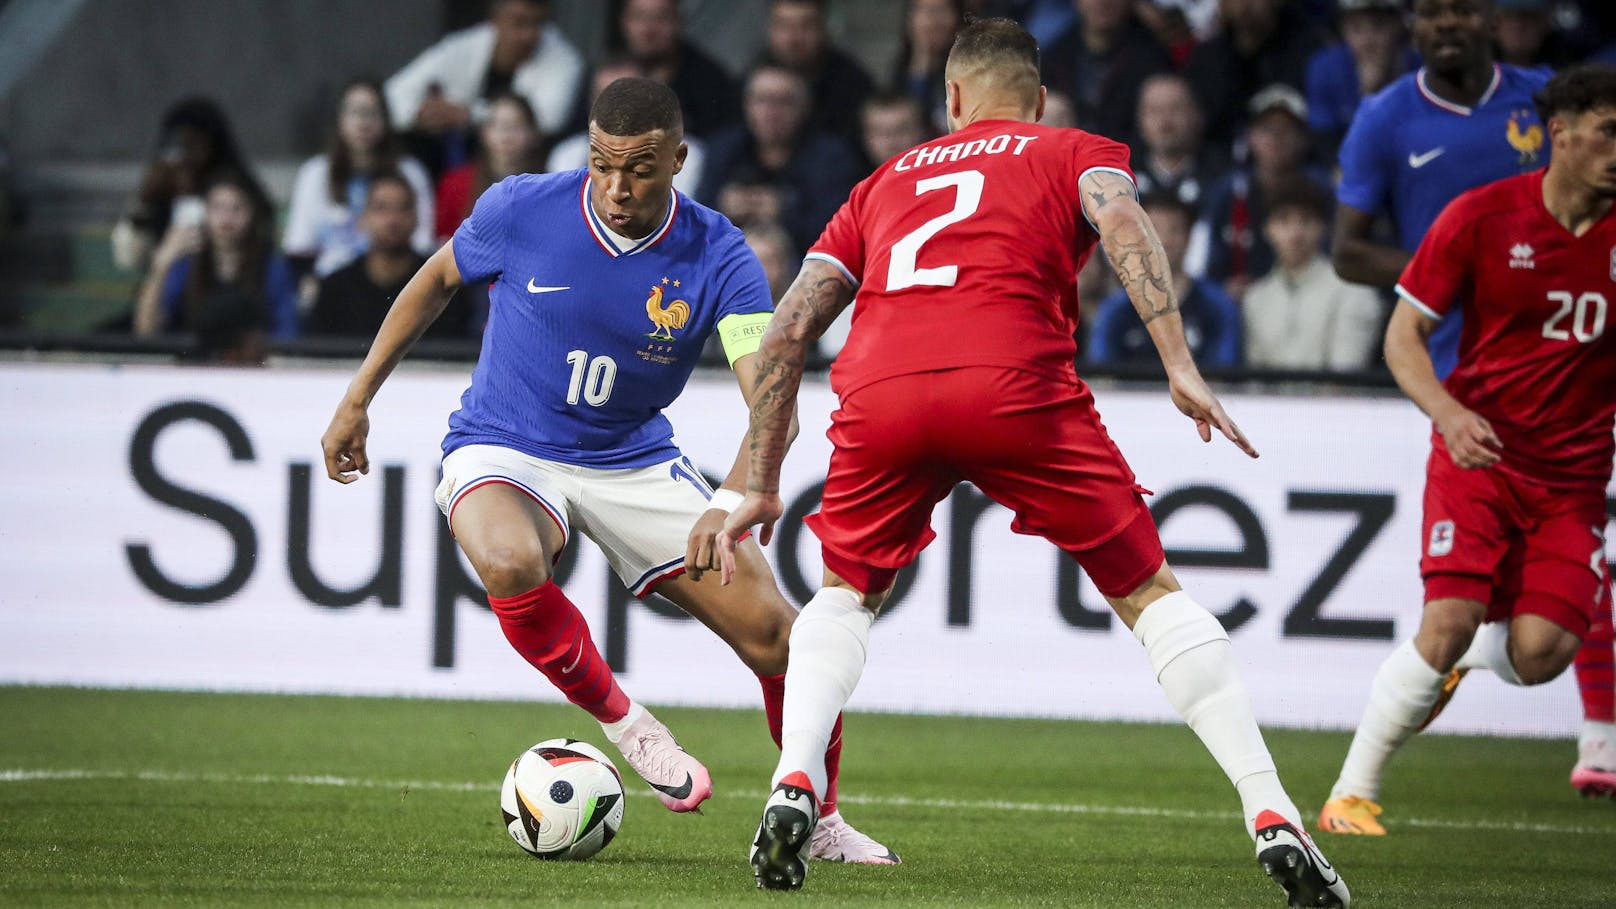 ÖFB-Gegner Frankreich mit Mühe gegen Fußballzwerg